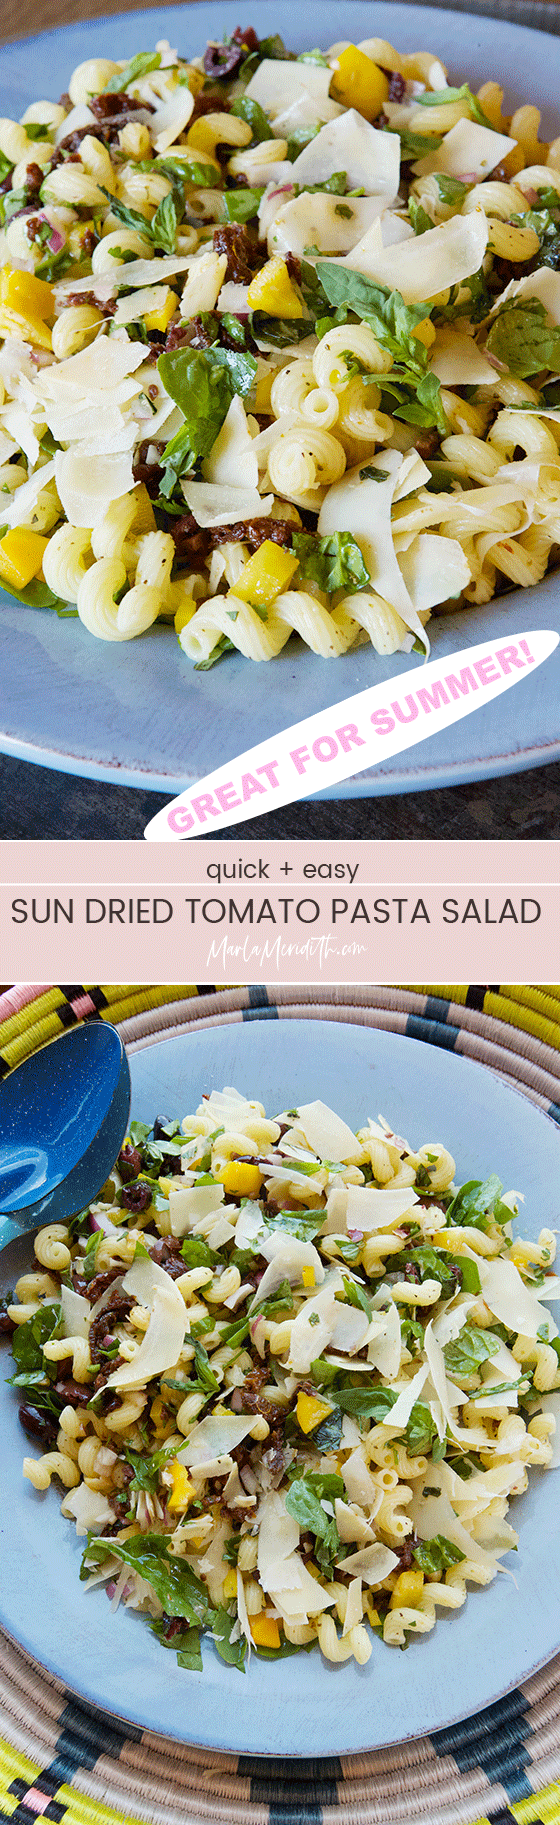 Sun Dried Tomato Pasta Salad Recipe